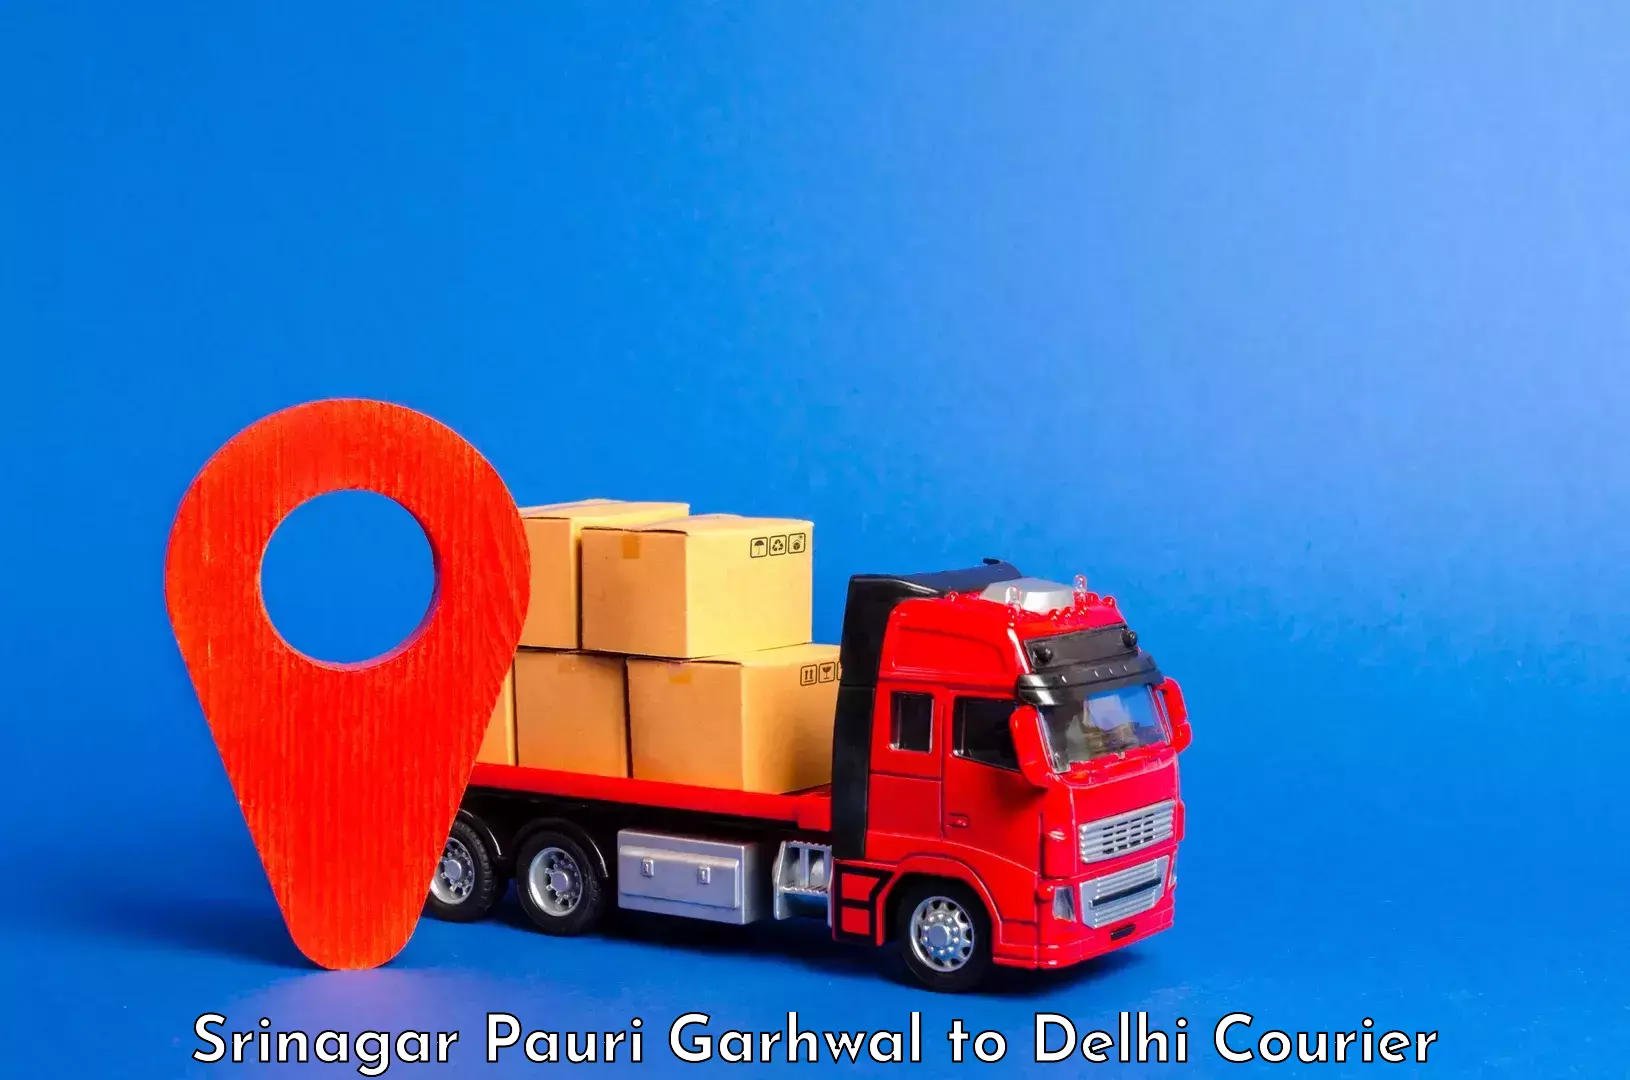 Luggage transport service Srinagar Pauri Garhwal to NIT Delhi